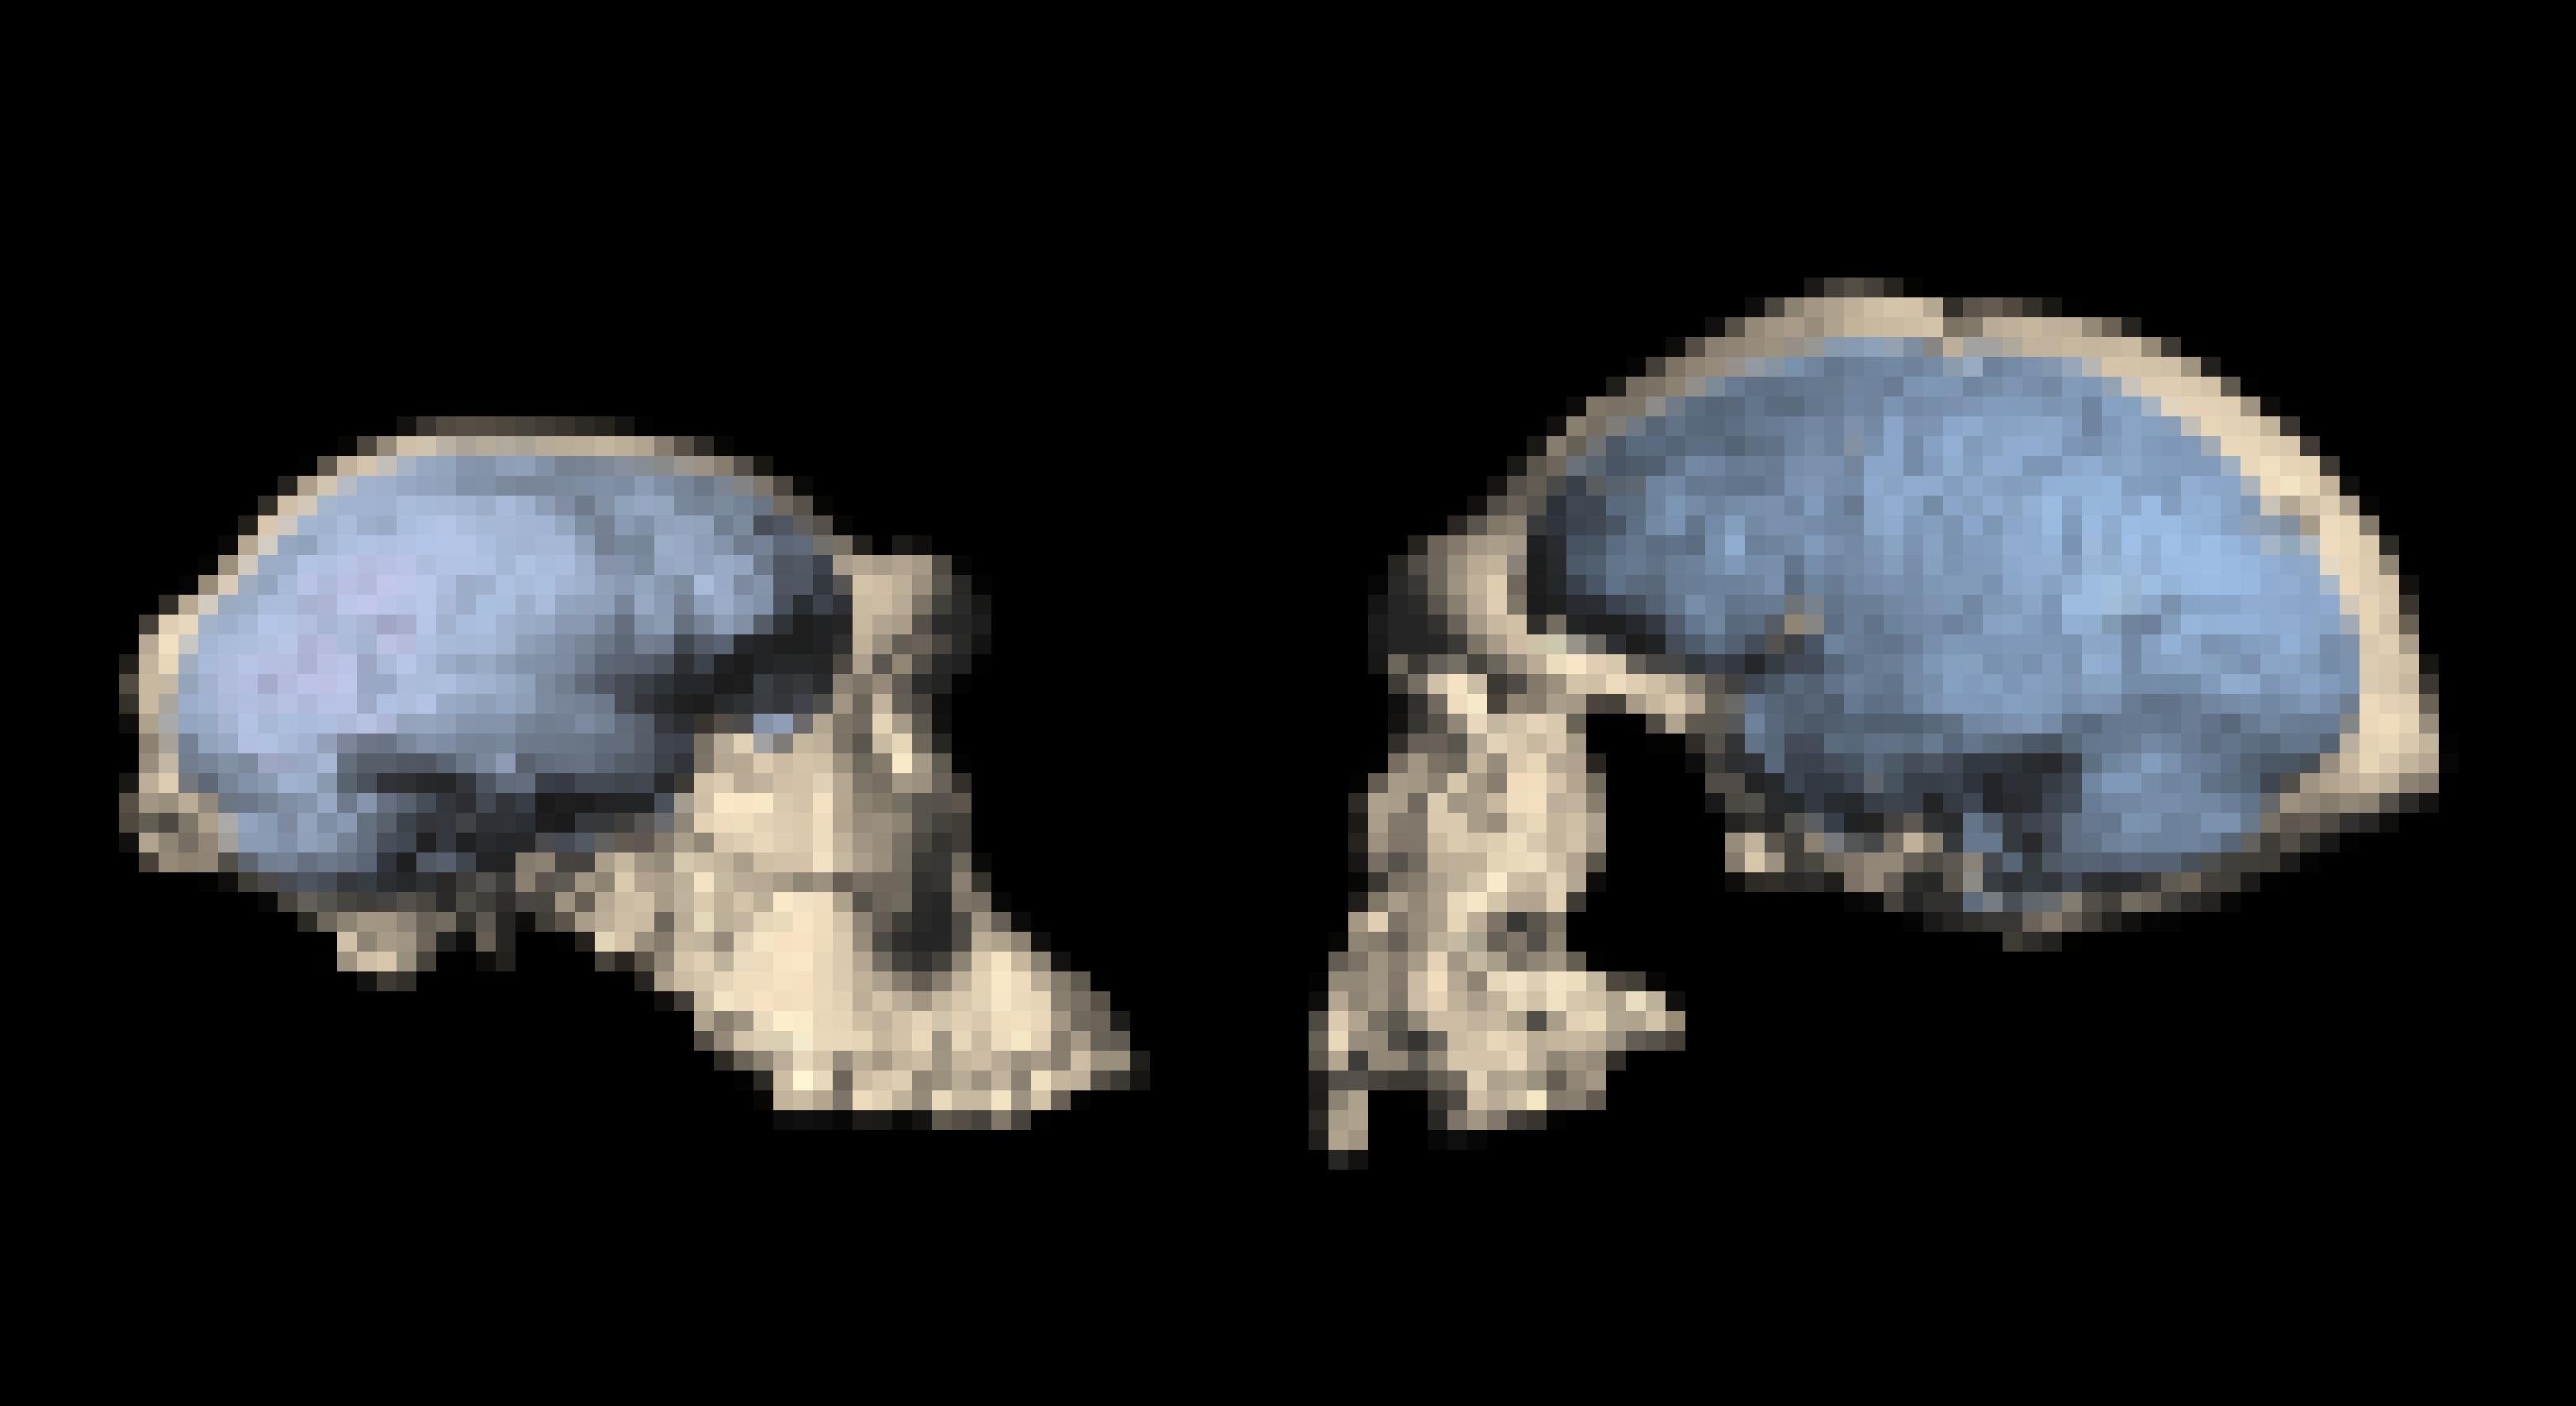 Das Foto zeigt zwei helle Urmenschen-Schädel, die sich gegenüberstehen und ansehen. Blau eingezeichnet sind die Hirnstrukturen. Der linke Schädel, aus Georgien stammend, wirkt primitiver, der rechte Schädel ist größer und wirkt fortschrittlicher. Vor allem das Stirnhirn ist dort stärker entwickelt und lässt auf höhere geistige Fähigkeiten schließen.